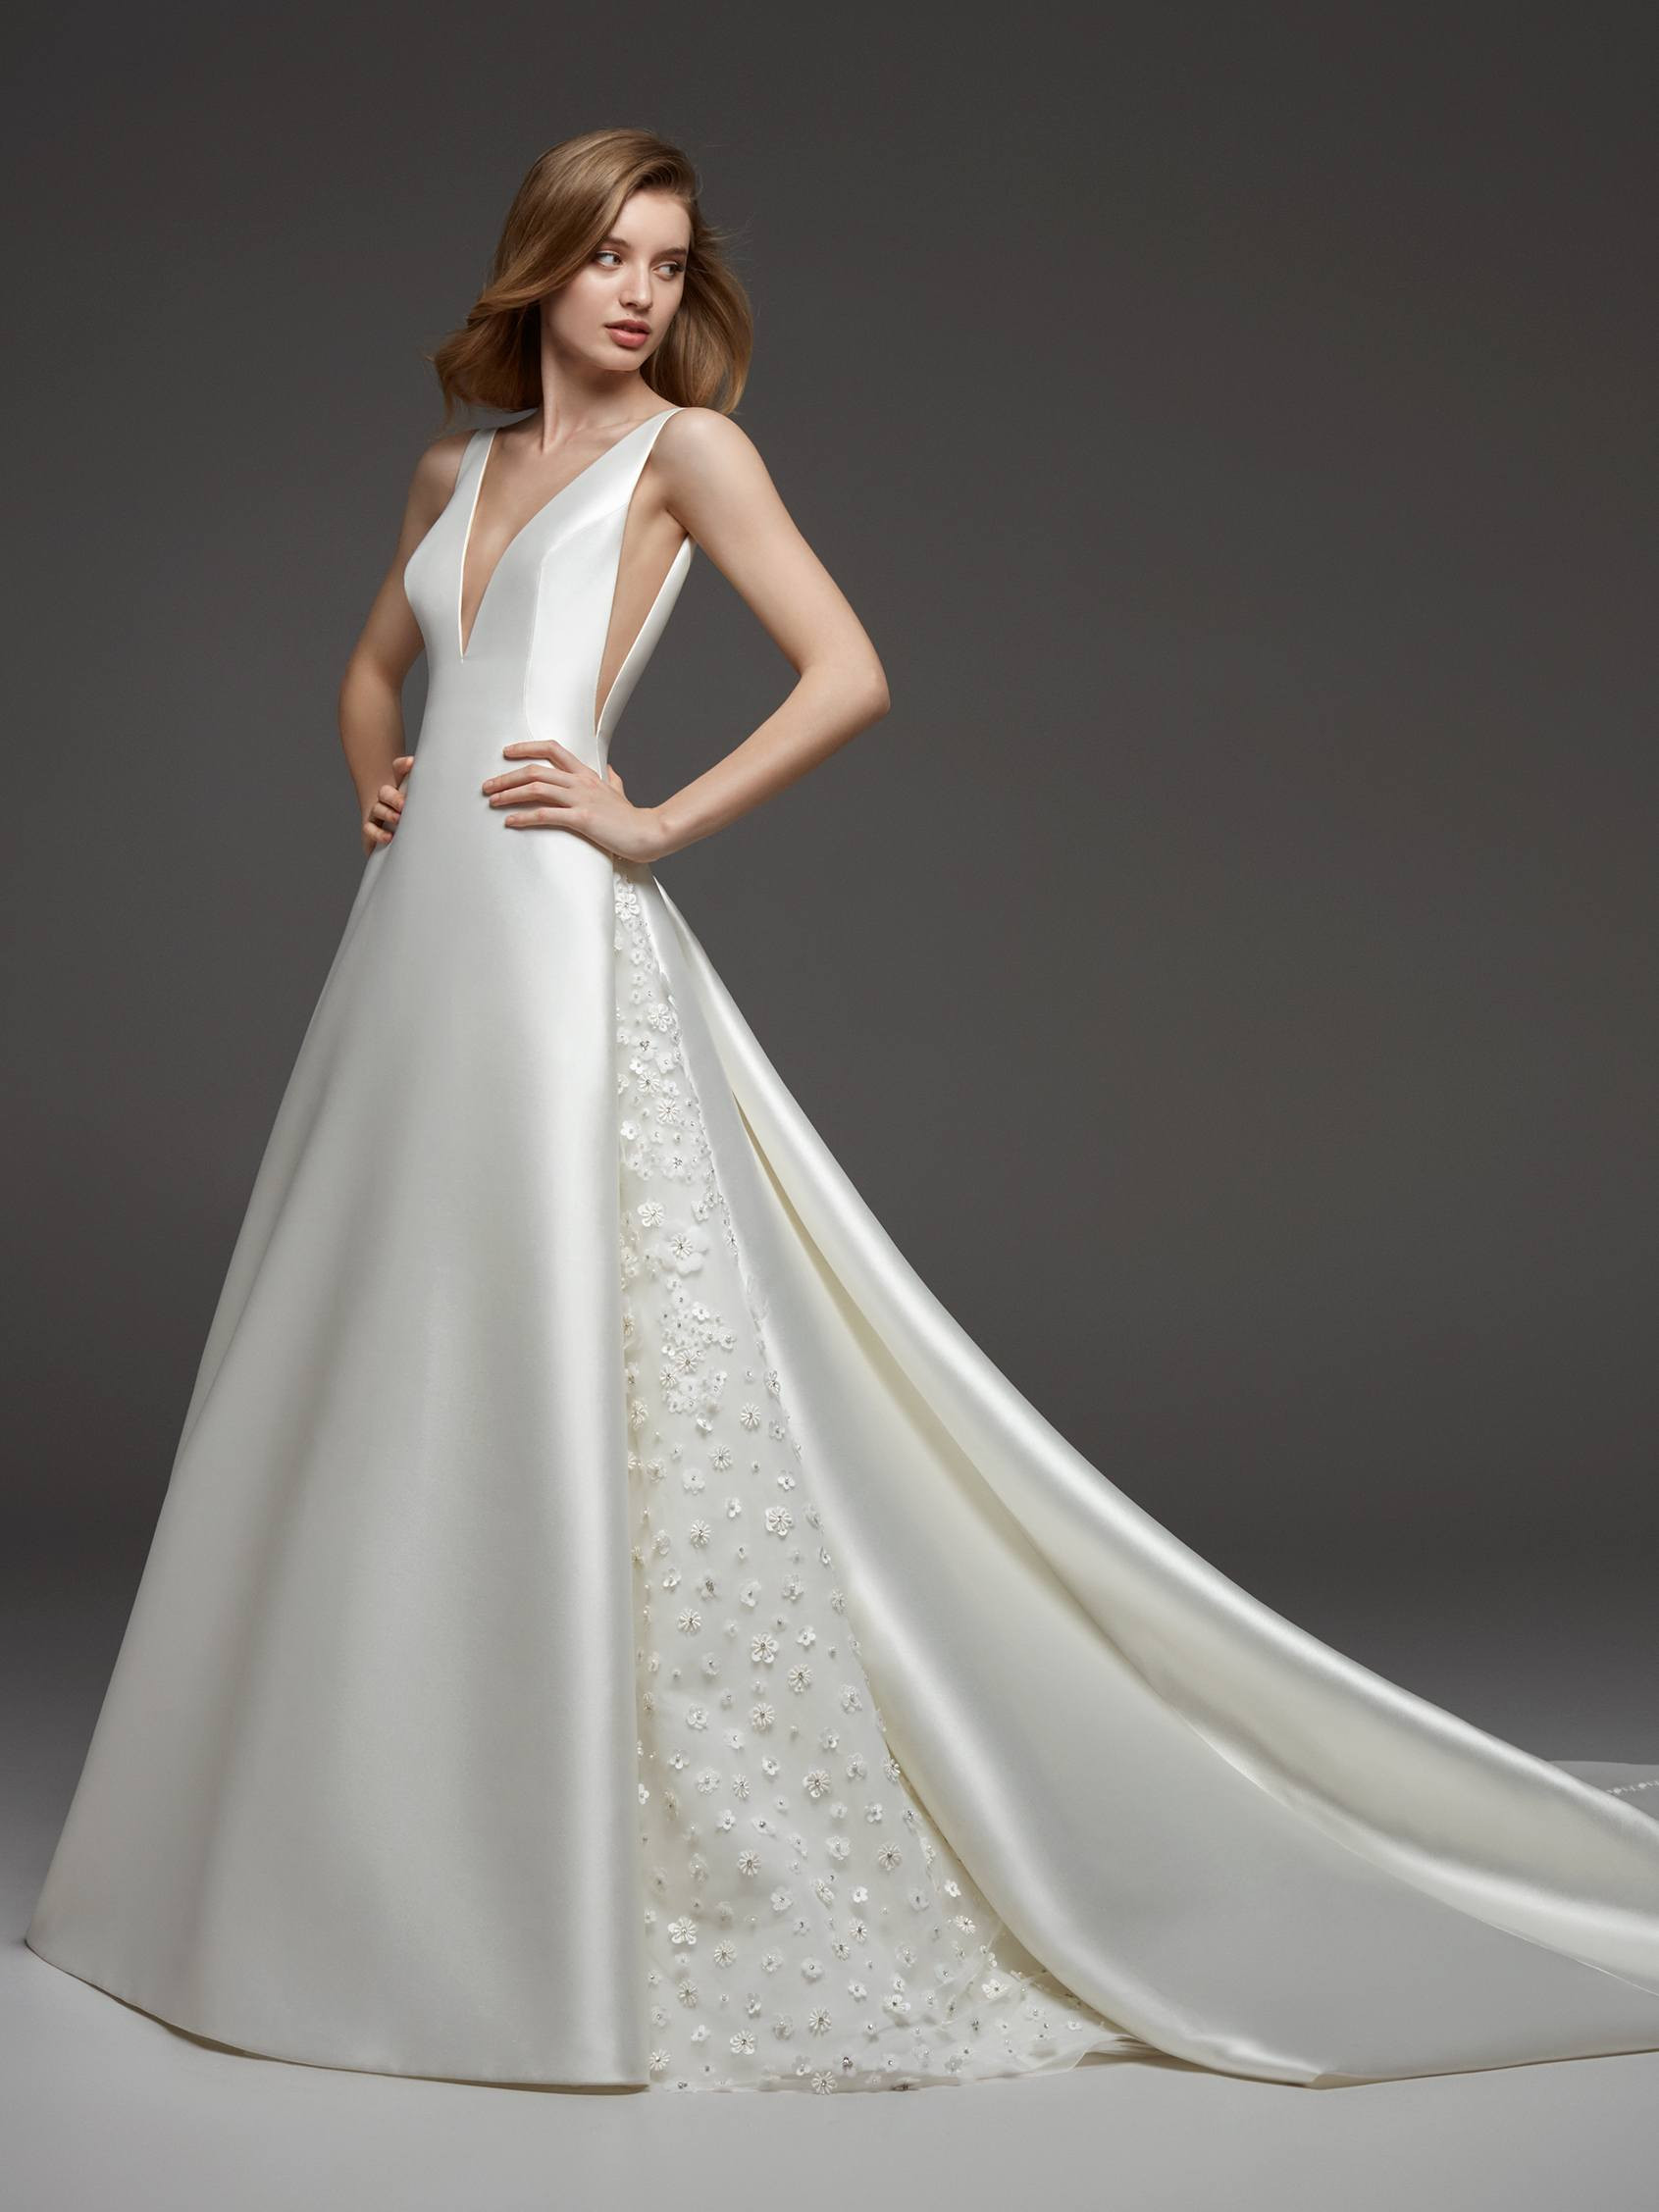 Tipos de blanco para el vestido de novia